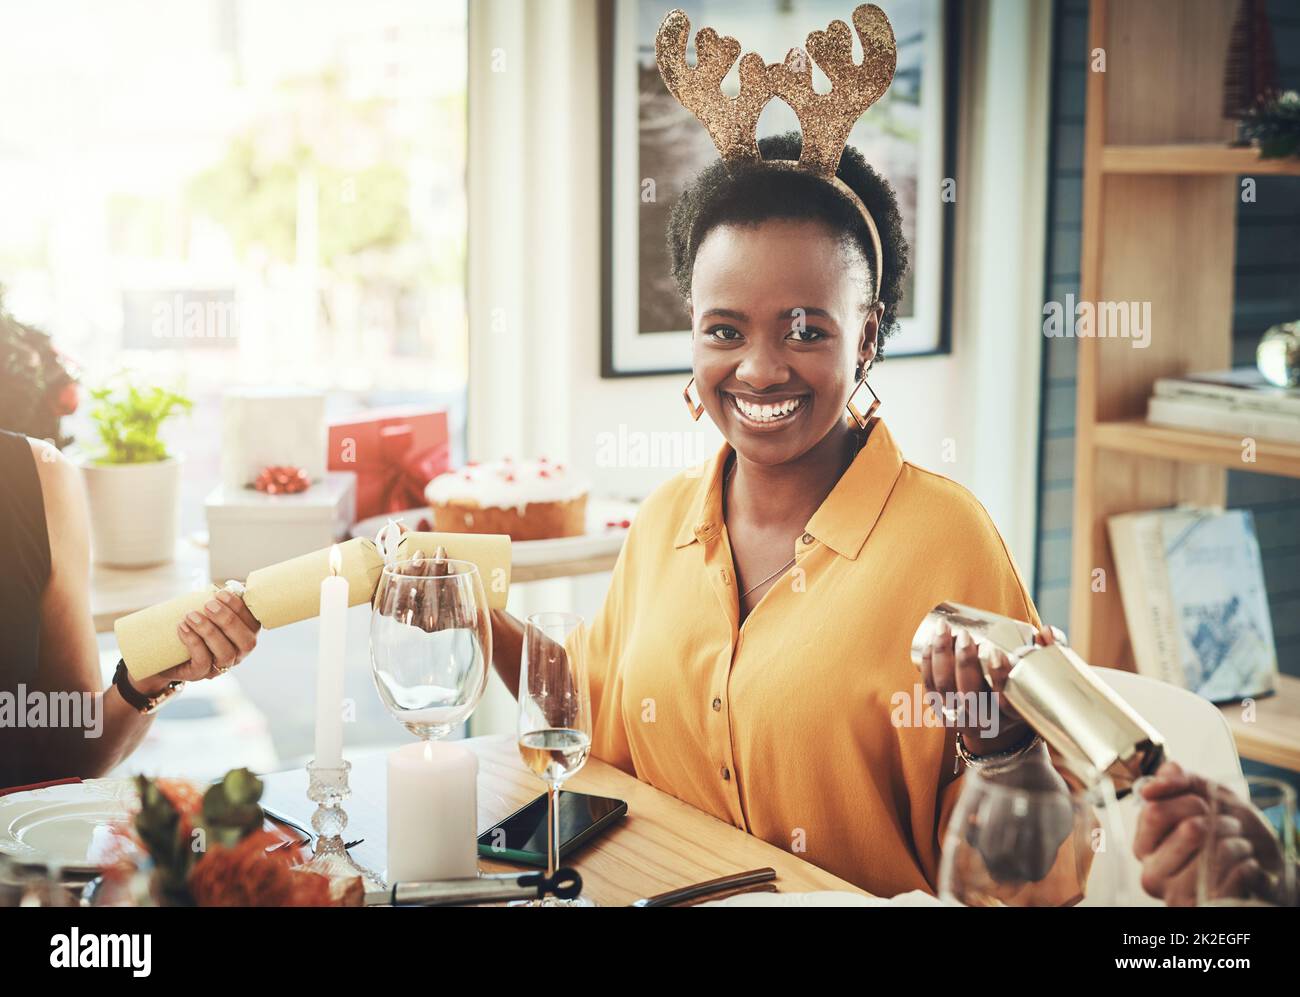 Questa è la parte più entusiasmante. Scatto corto di una giovane donna attraente che tira i cracker mentre si fa pranzo di Natale con i suoi amici a casa. Foto Stock